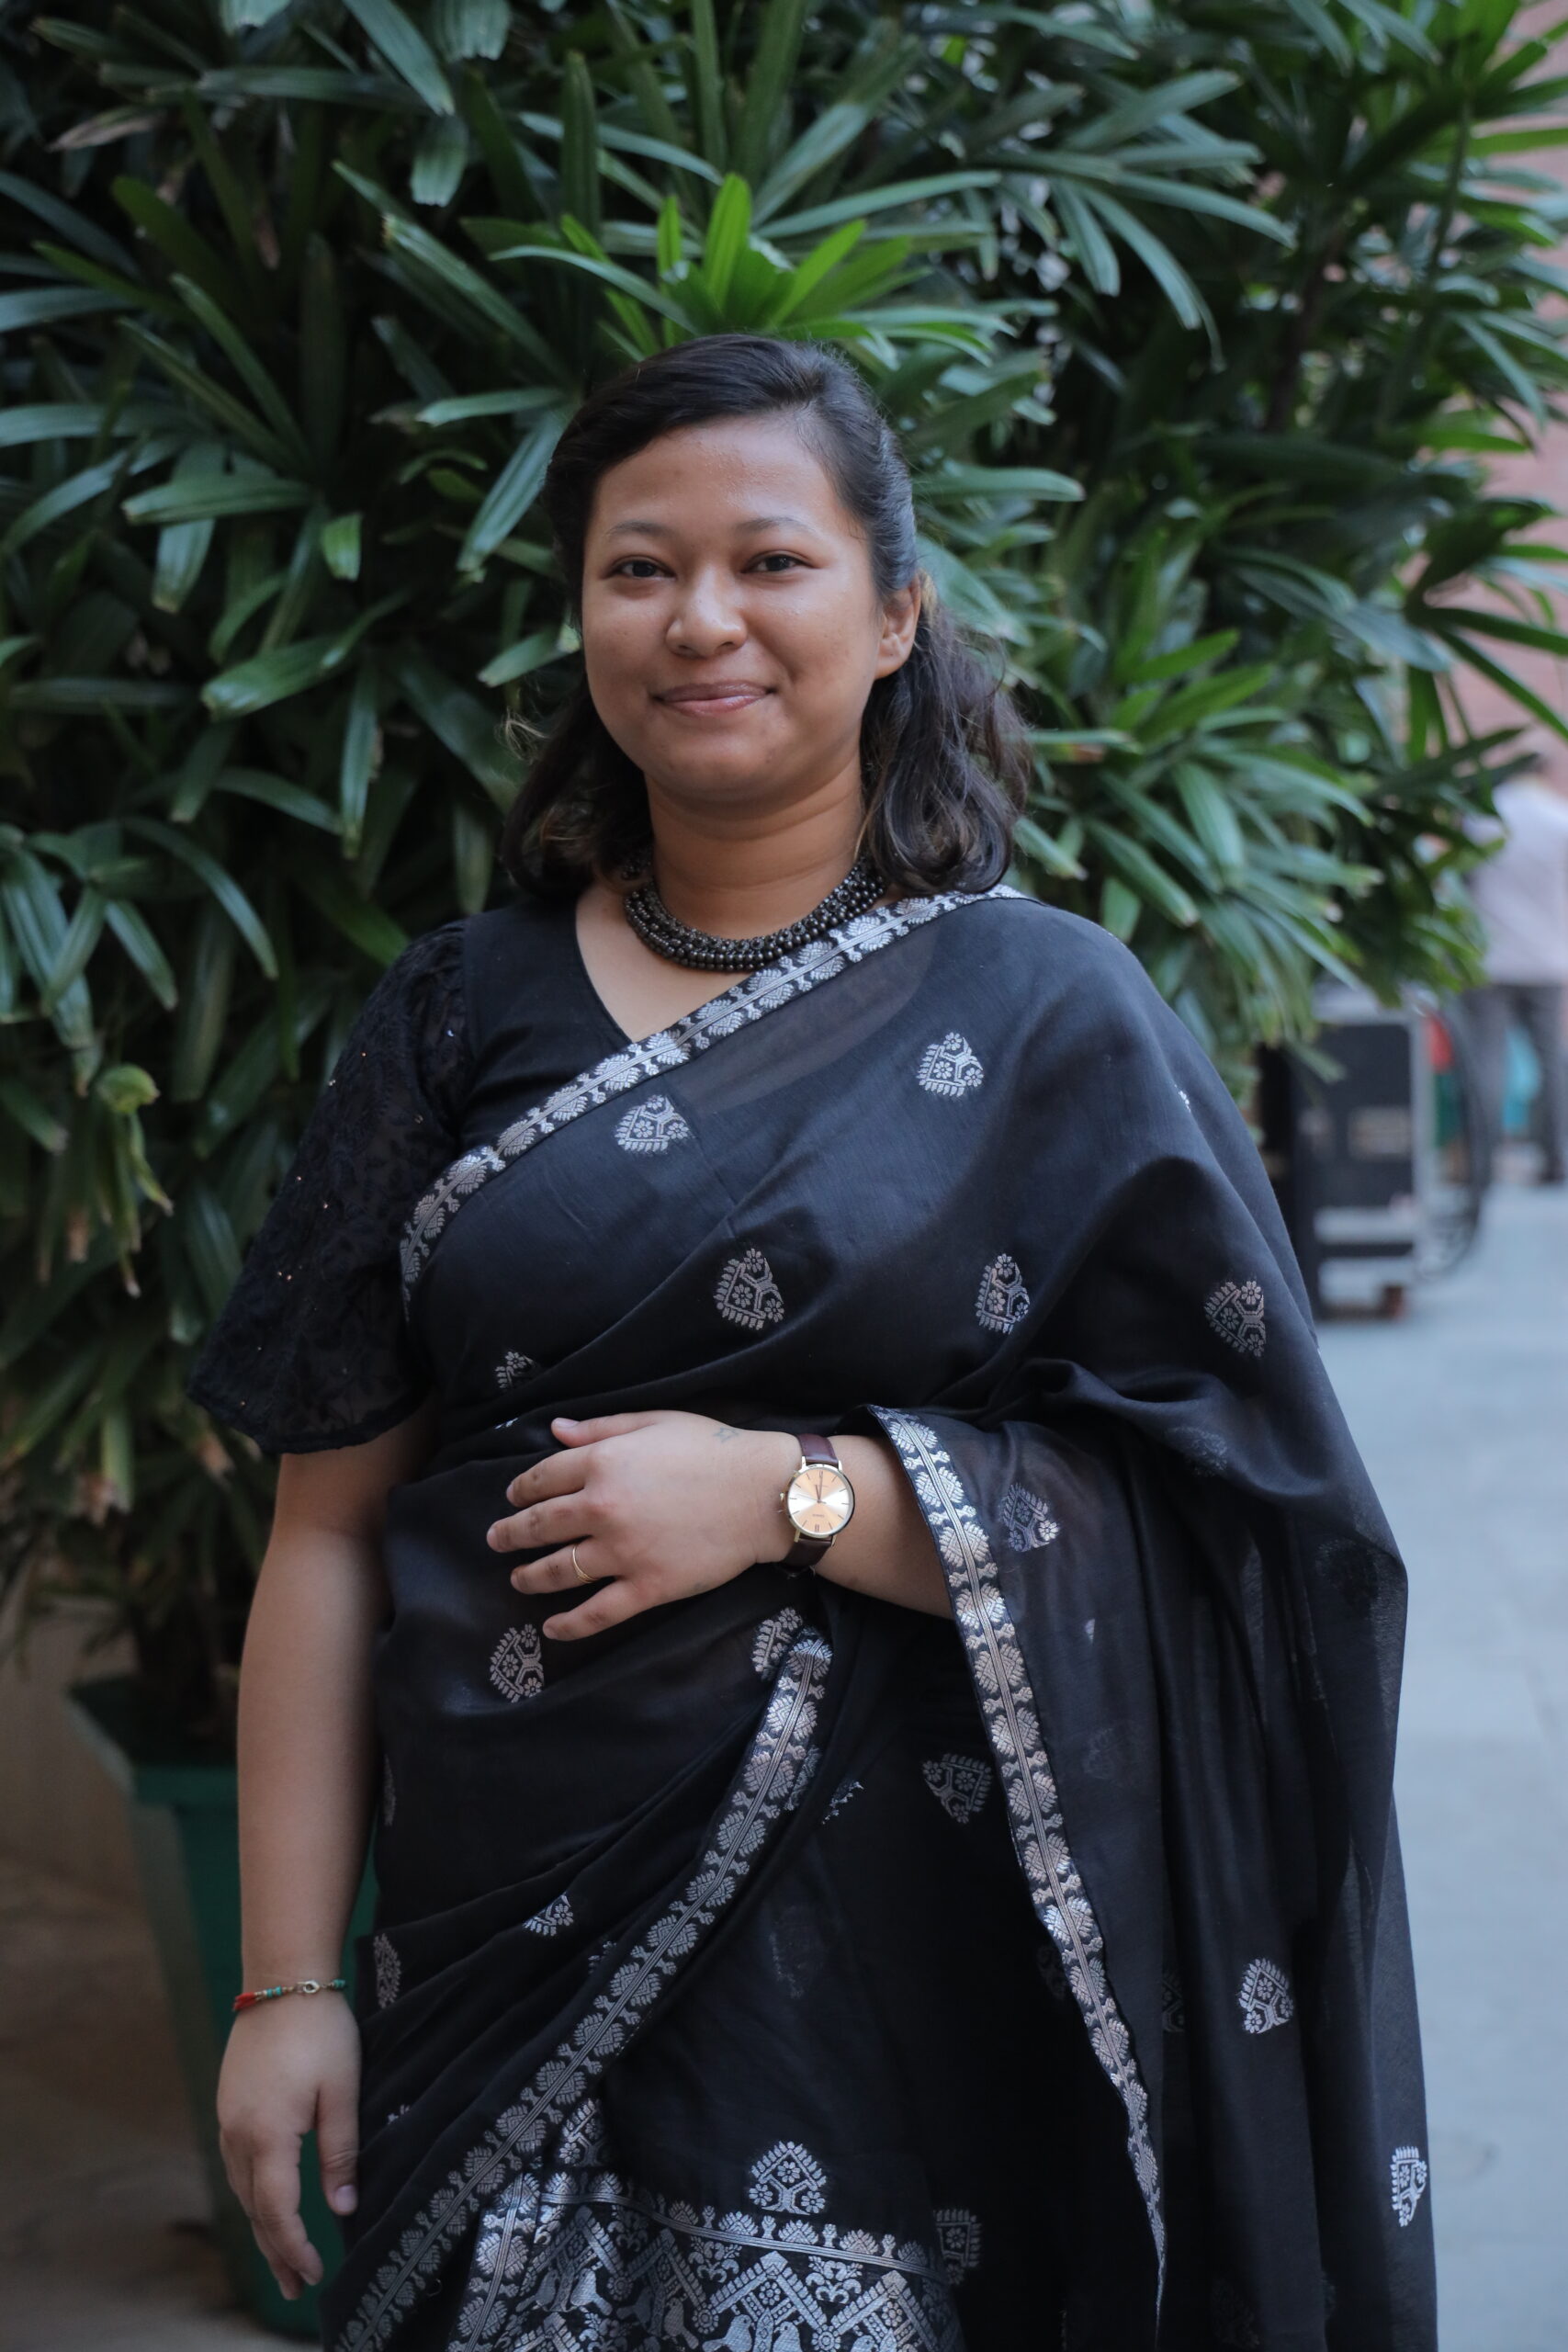 Anishmita Barah